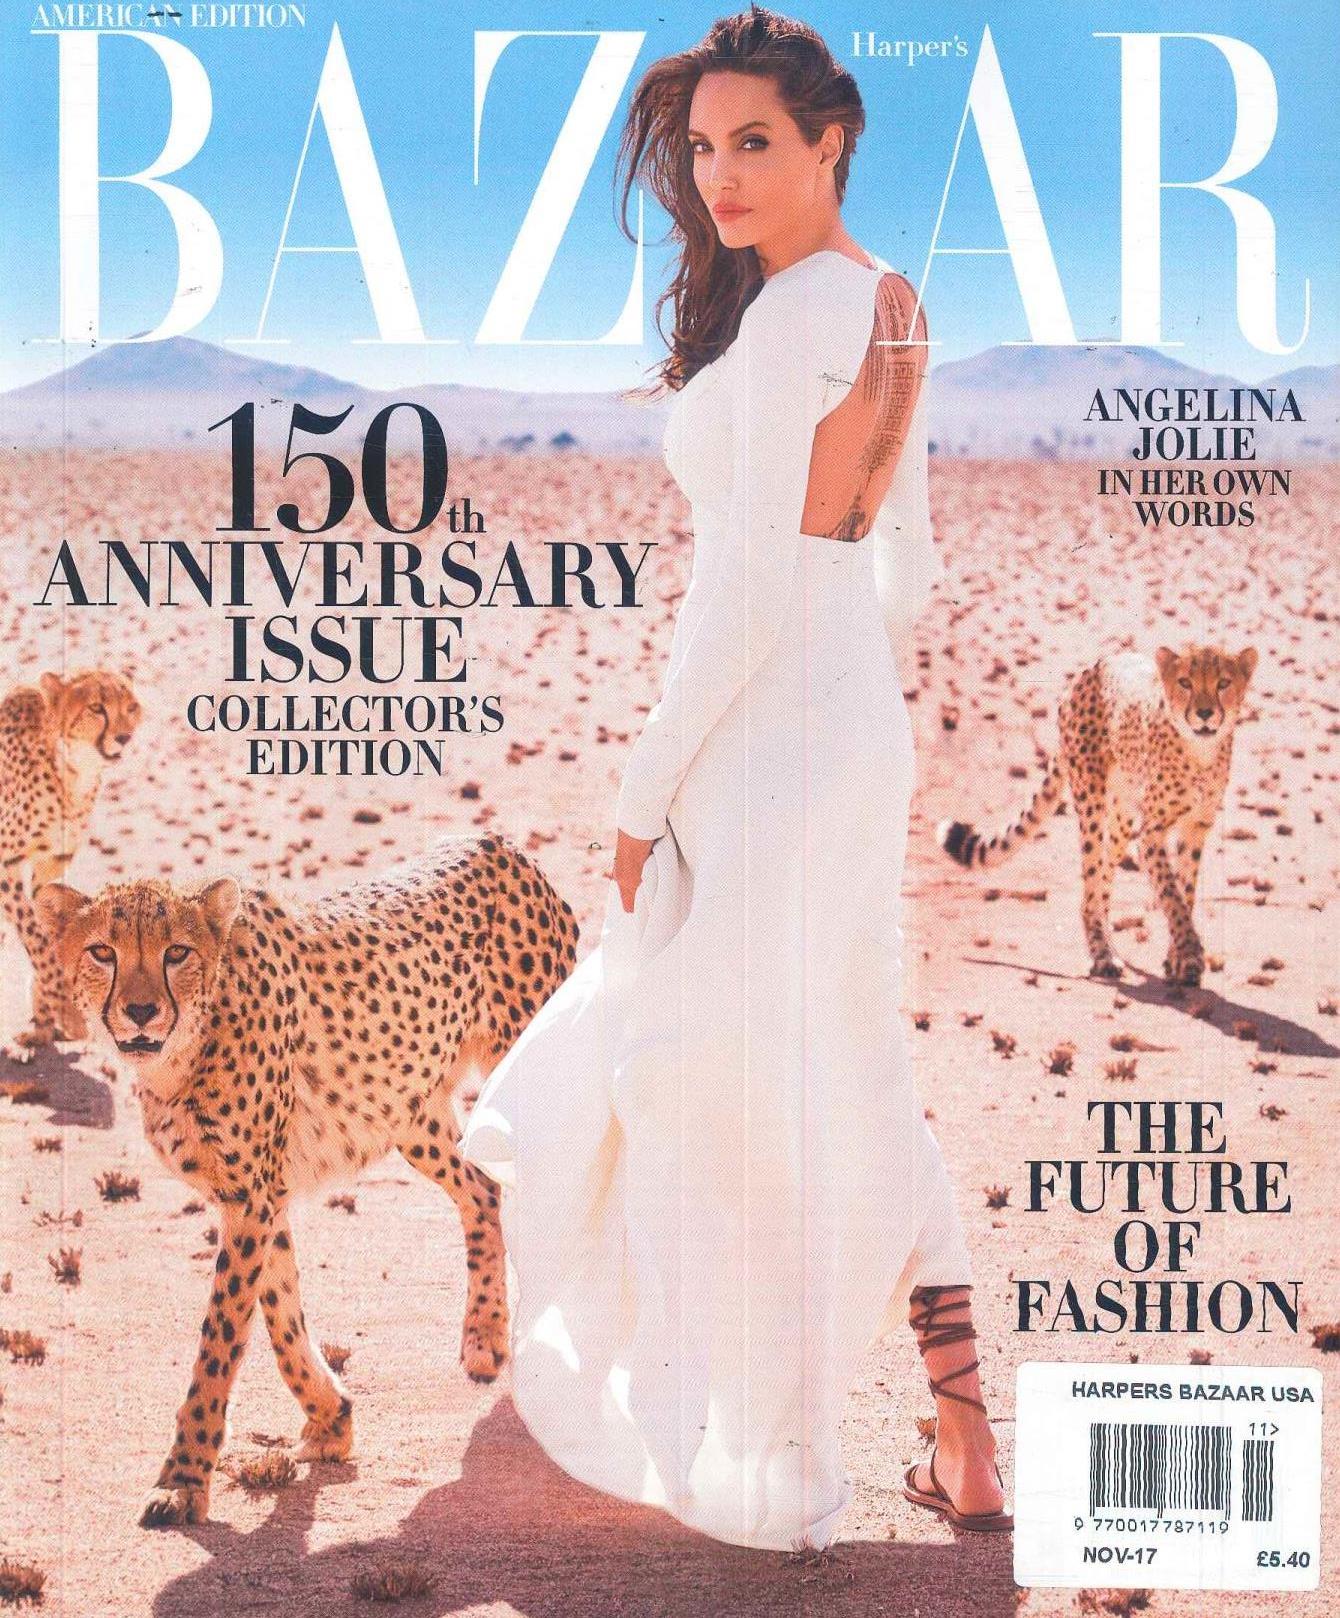 Harper's Bazaar - Unique Magazines